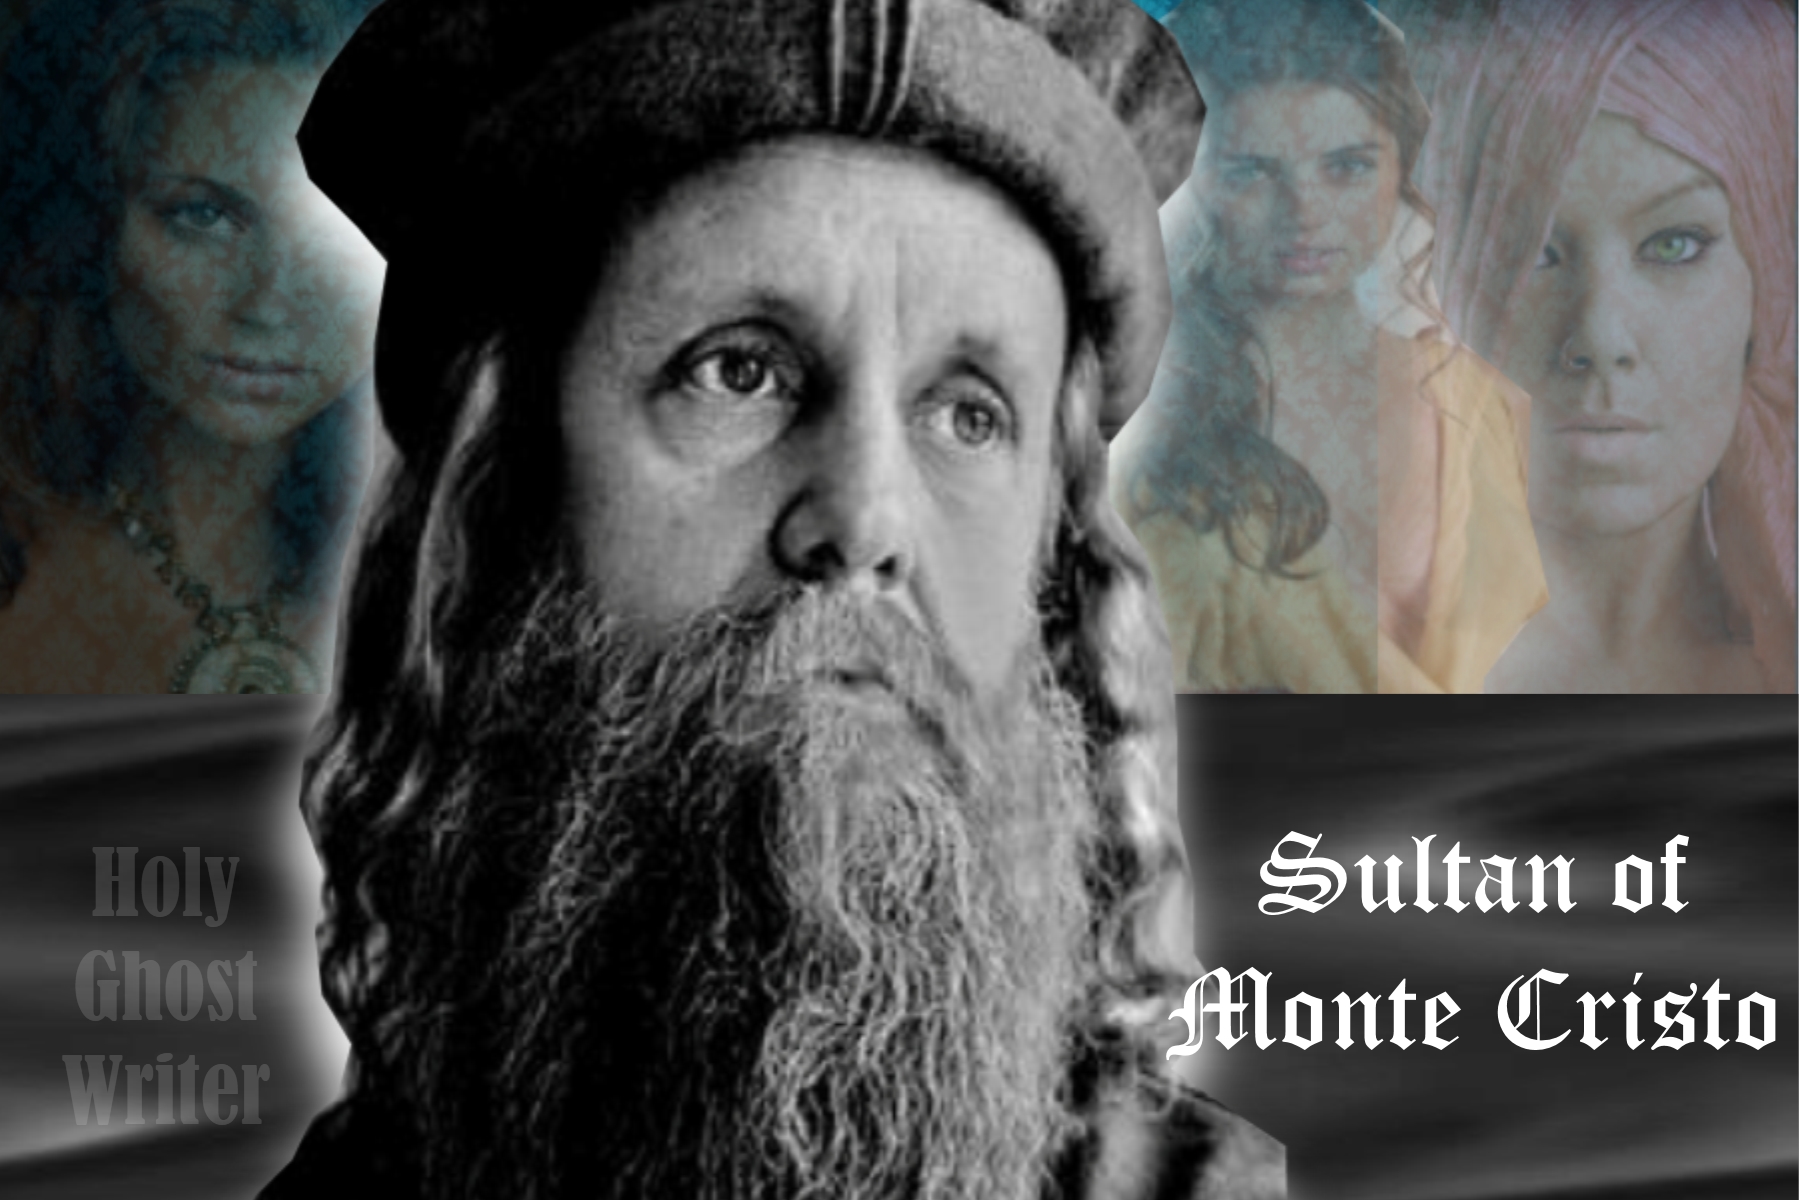 El Sultán de Monte Cristo by Holy Ghost Writer